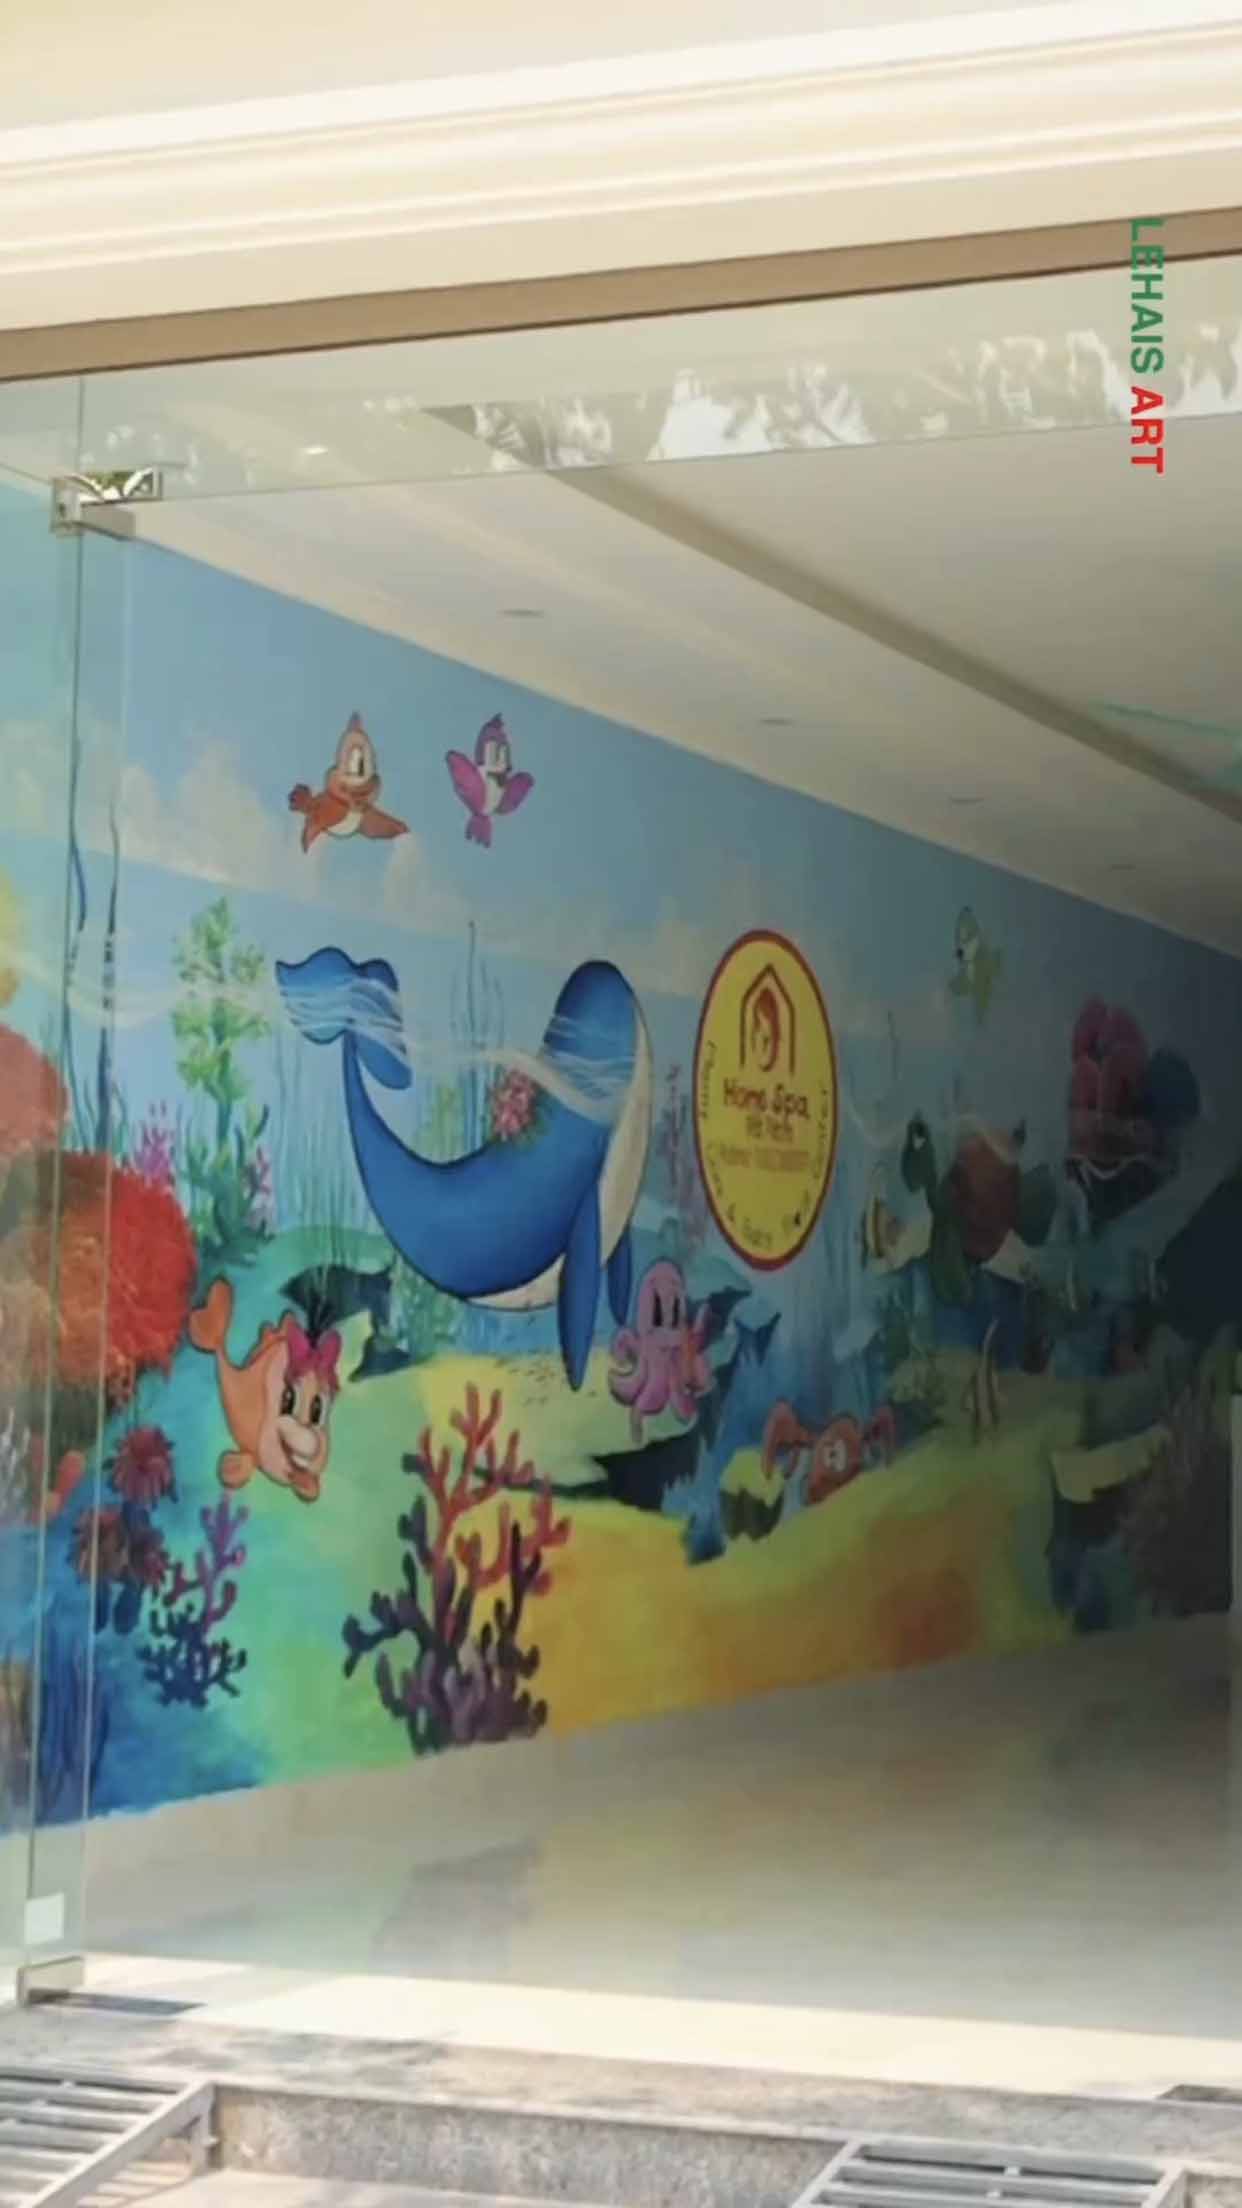 Vẽ trang trí tường cho Home Sapa cơ sở Hà Nam